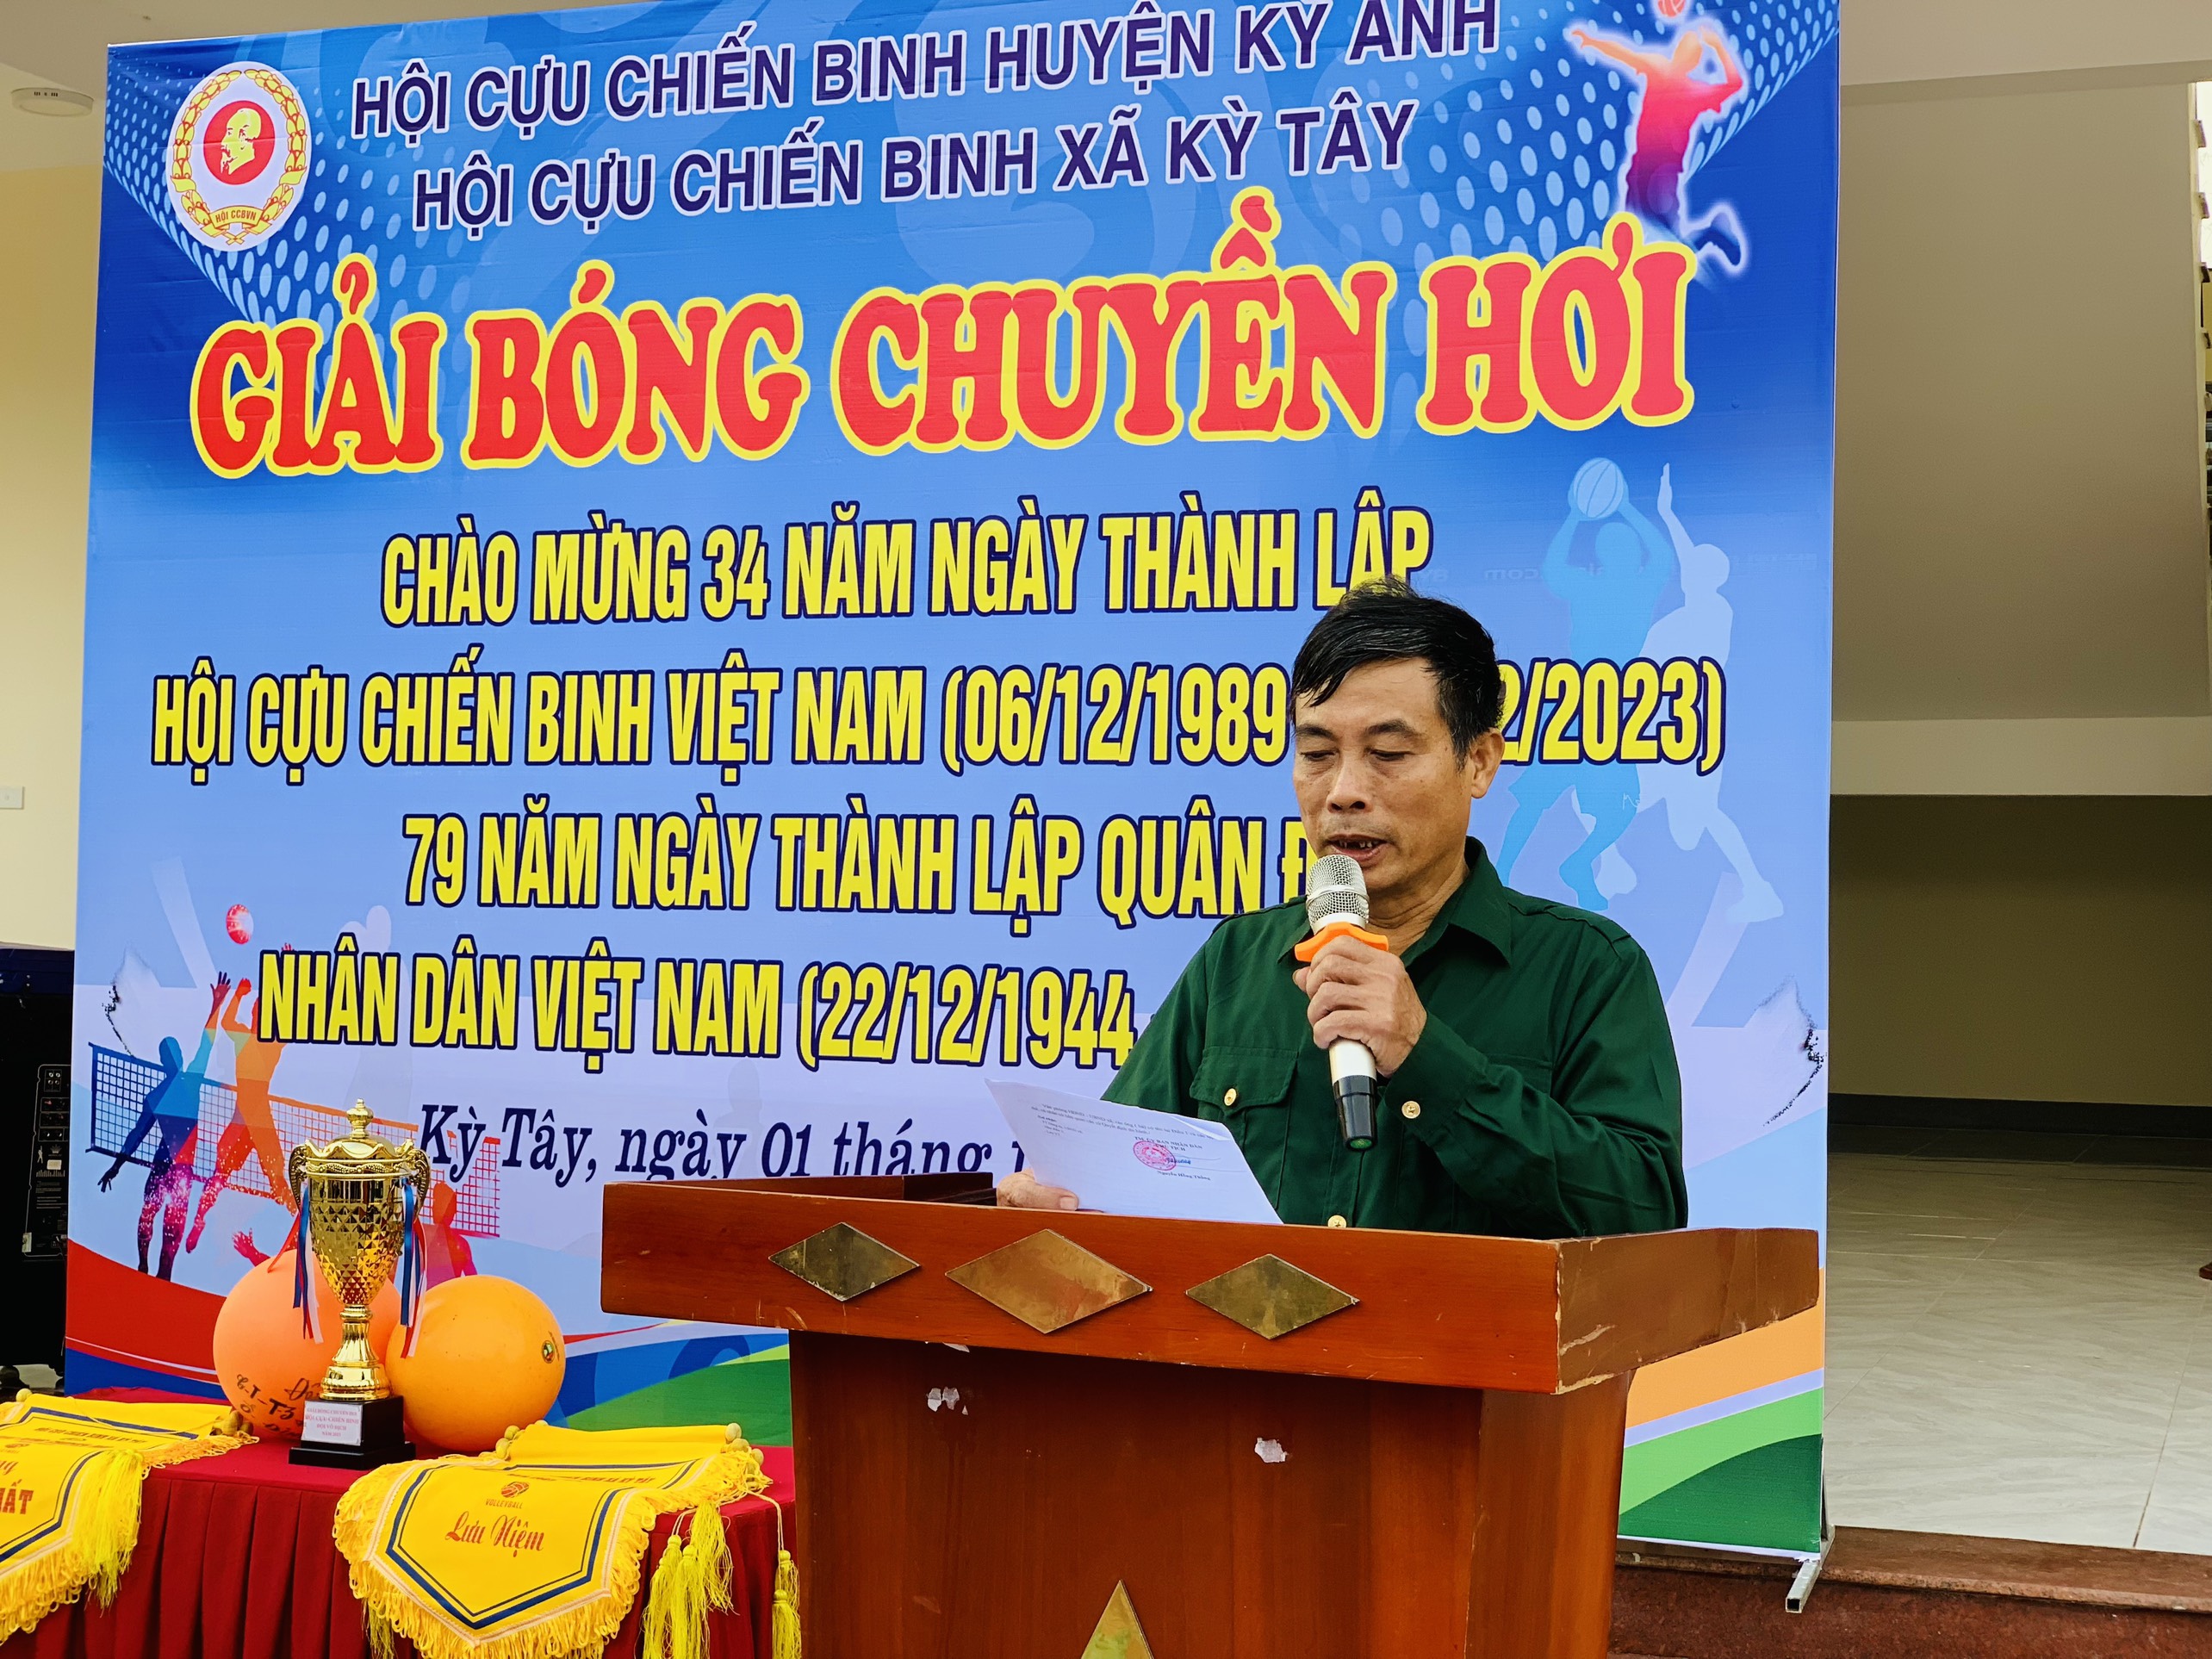 Ảnh: Đồng chí Trần Văn Tăng, Chủ tịch hội Cựu chiến binh xã khai mạc giải